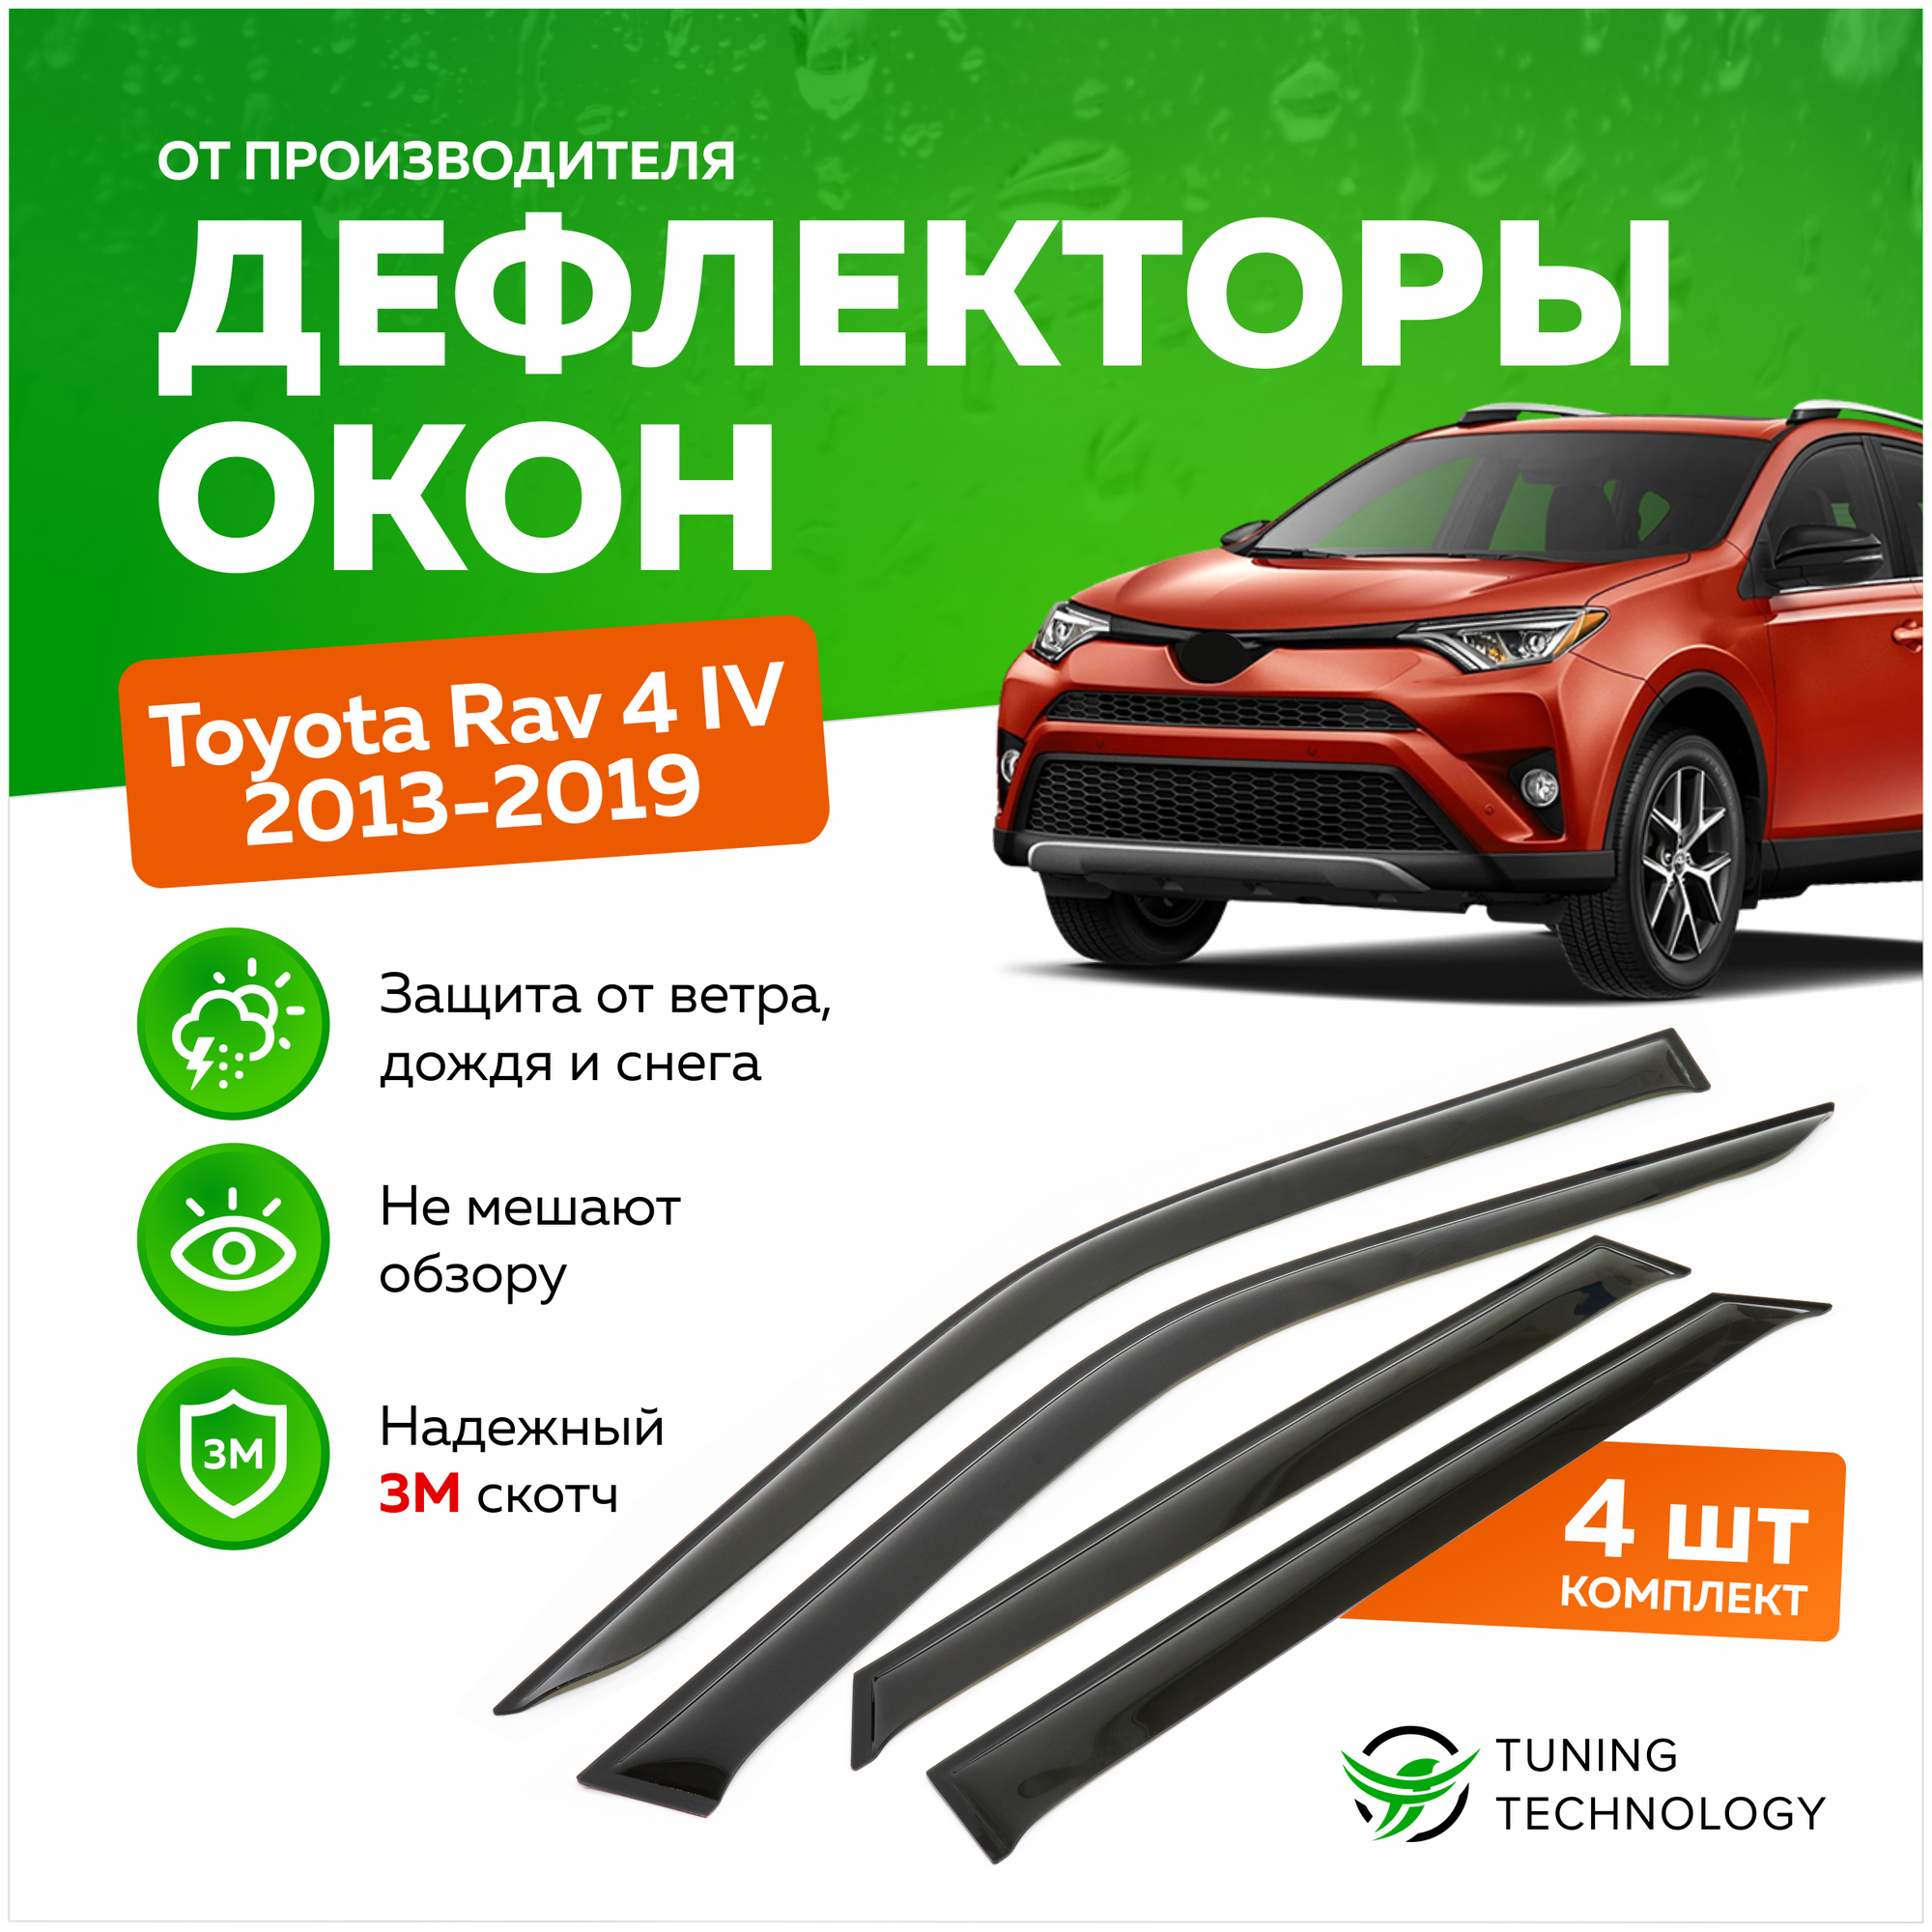 Дефлекторы боковых окон Toyota Rav 4 (Тойота Рав 4) IV 2013-2019, ветровики на двери автомобиля, ТТ